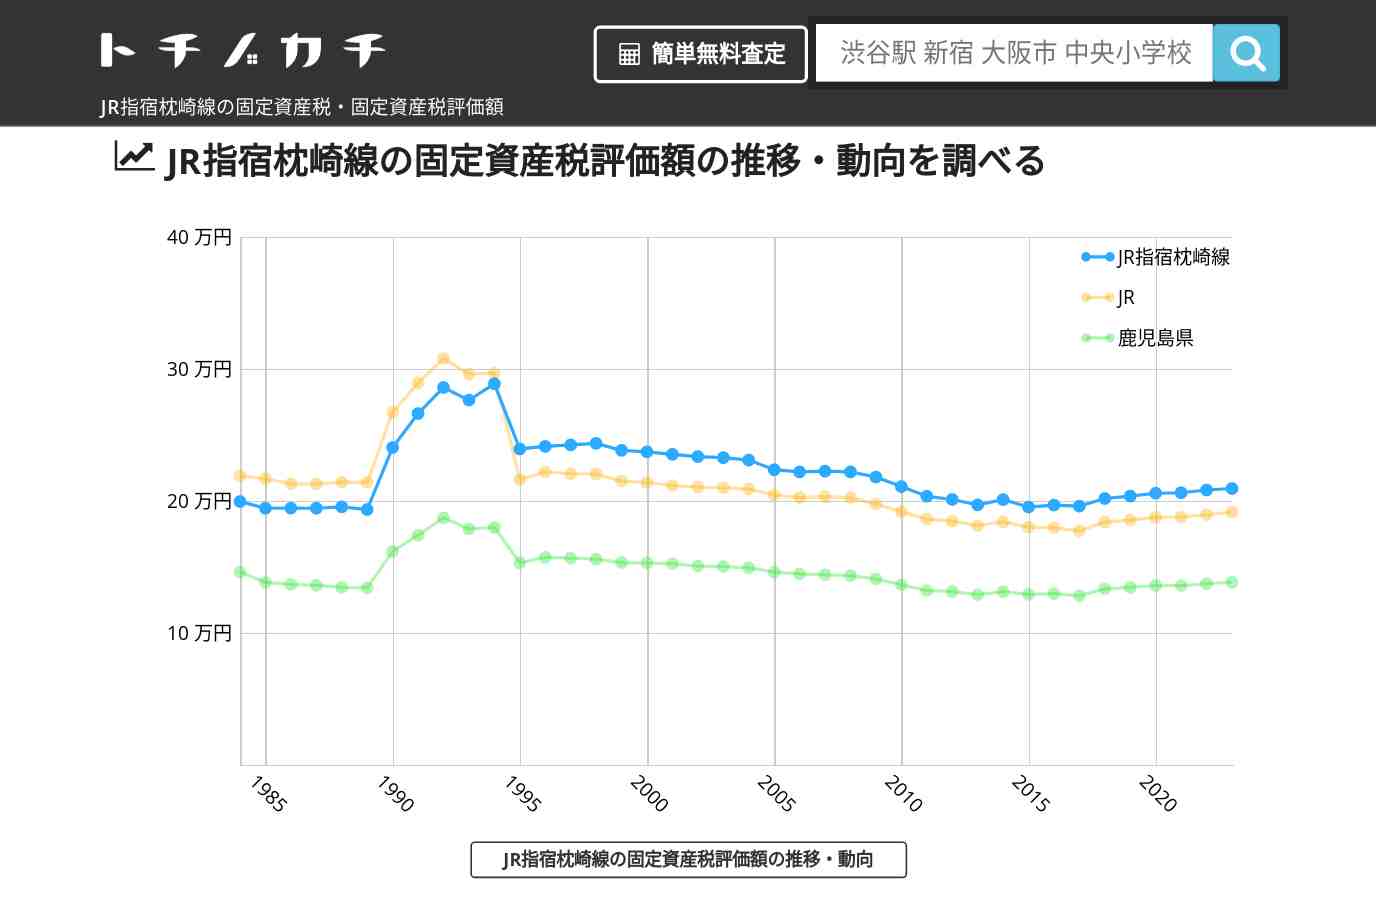 JR指宿枕崎線(JR)の固定資産税・固定資産税評価額 | トチノカチ